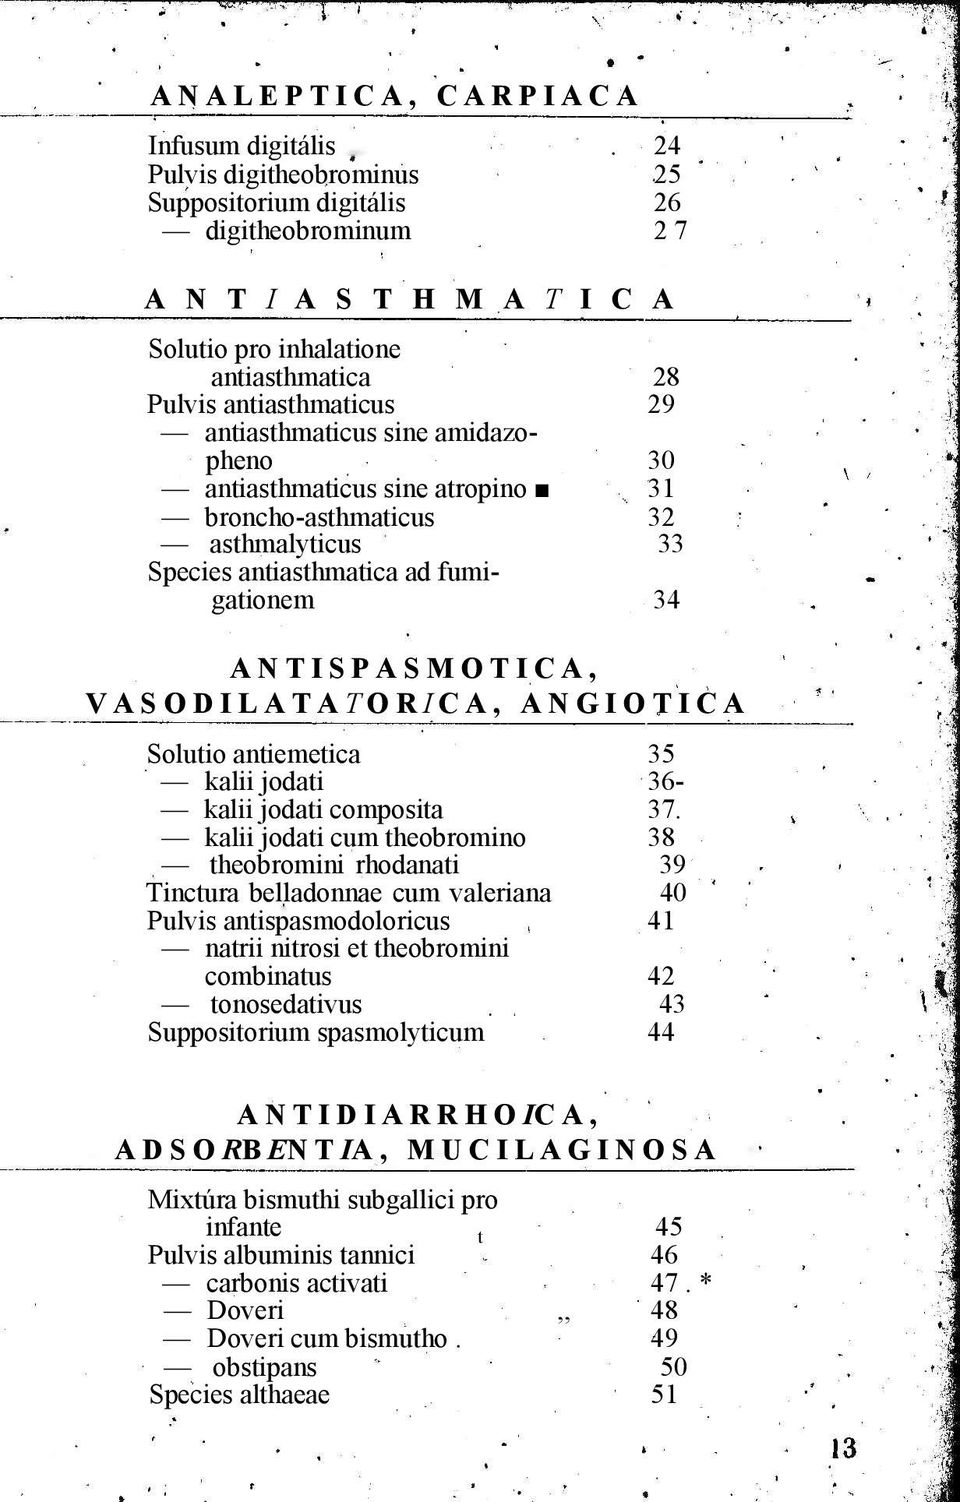 amidazopheno 30 antiasthmaticus sine atropino 31 broncho-asthmaticus asthmalyticus 32 33 Species antiasthmatica ad fumigationem 34 ANTISPASMOTICA, VASODILATATORICA, ANGIOTICA Solutio antiemetica 35